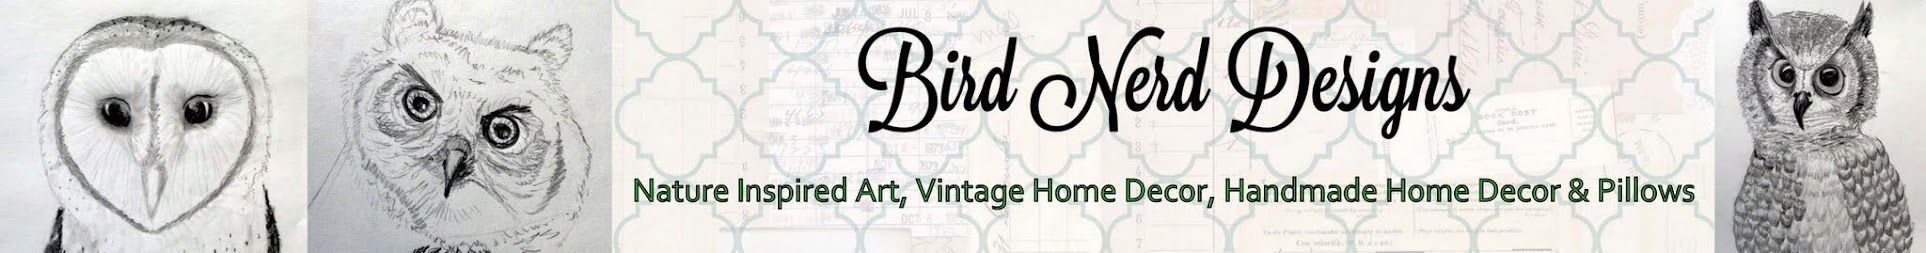 Bird Nerd Designs